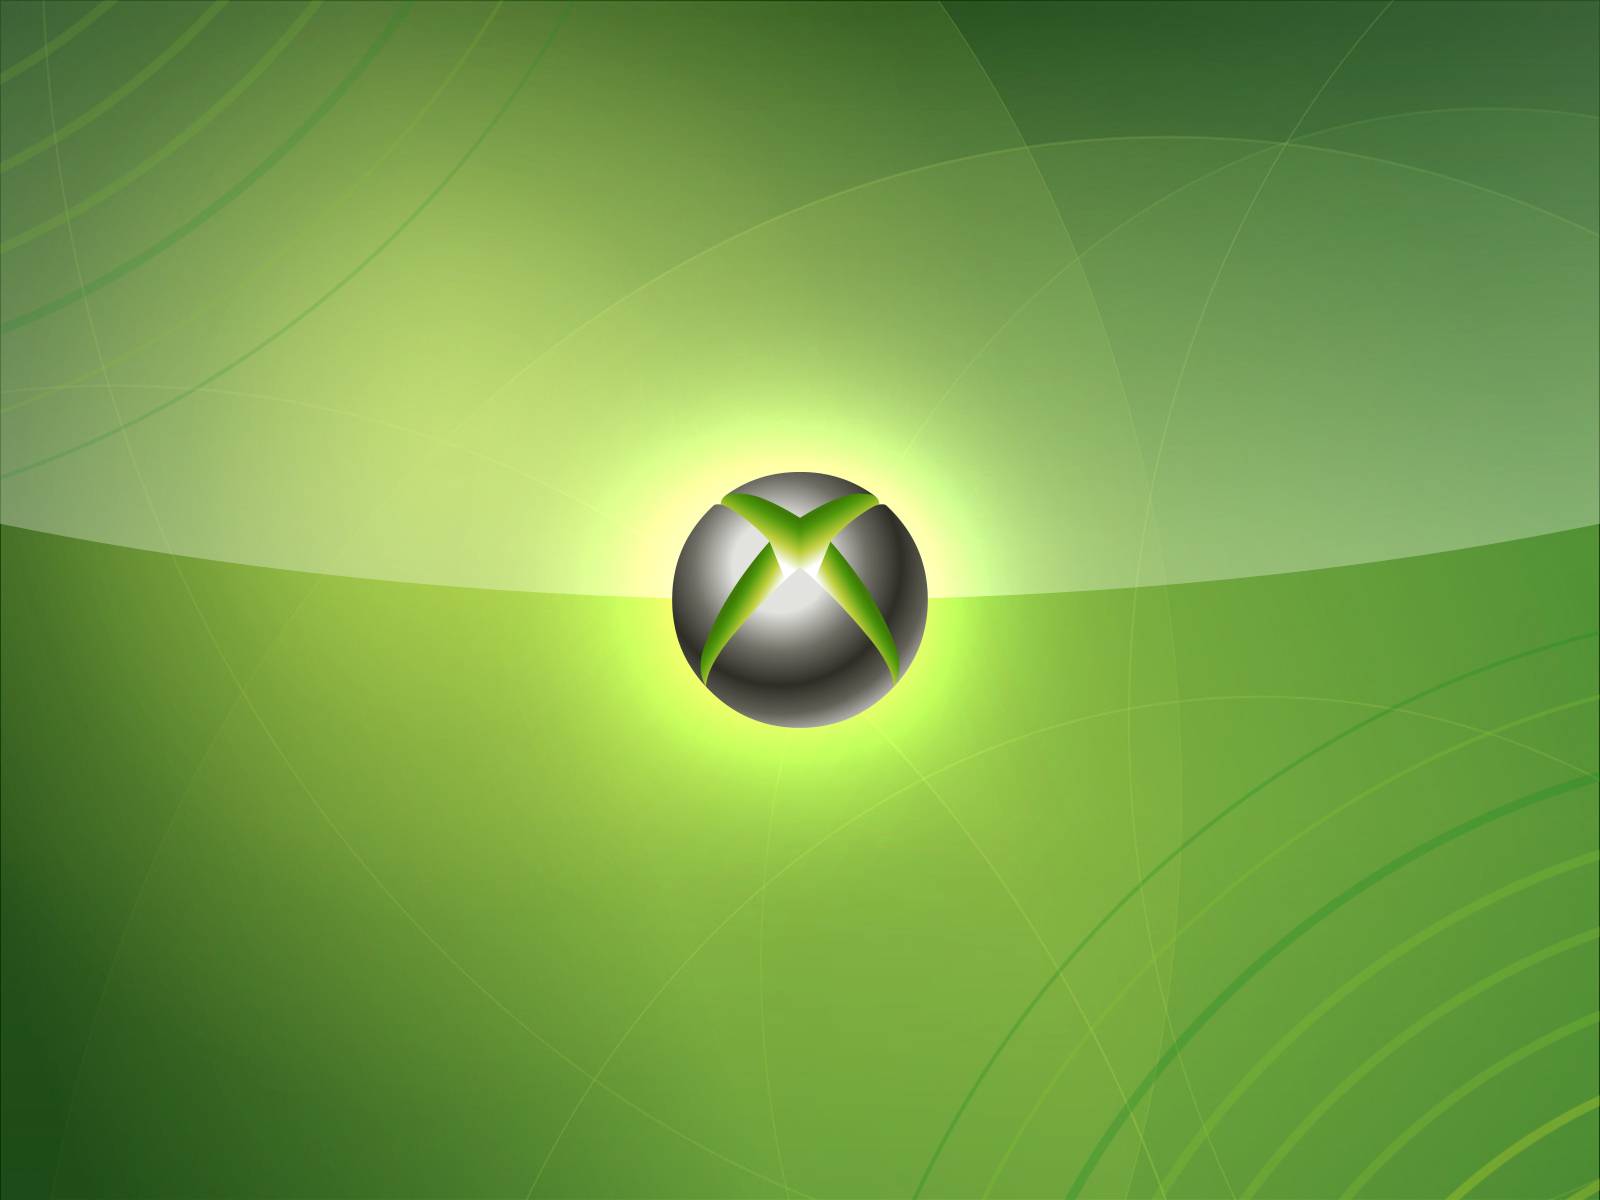 Hình nền Xbox Live mang đến cho bạn một màn hình đẹp mắt với lối thiết kế đậm chất game thủ. Hình ảnh được sao chép từ hệ thống máy chủ của Microsoft, tạo ra cảm giác thích thú và phấn khích cho bạn khi sử dụng màn hình của mình. Hãy đưa con chuột của bạn đến ngay để trải nghiệm Xbox Live.